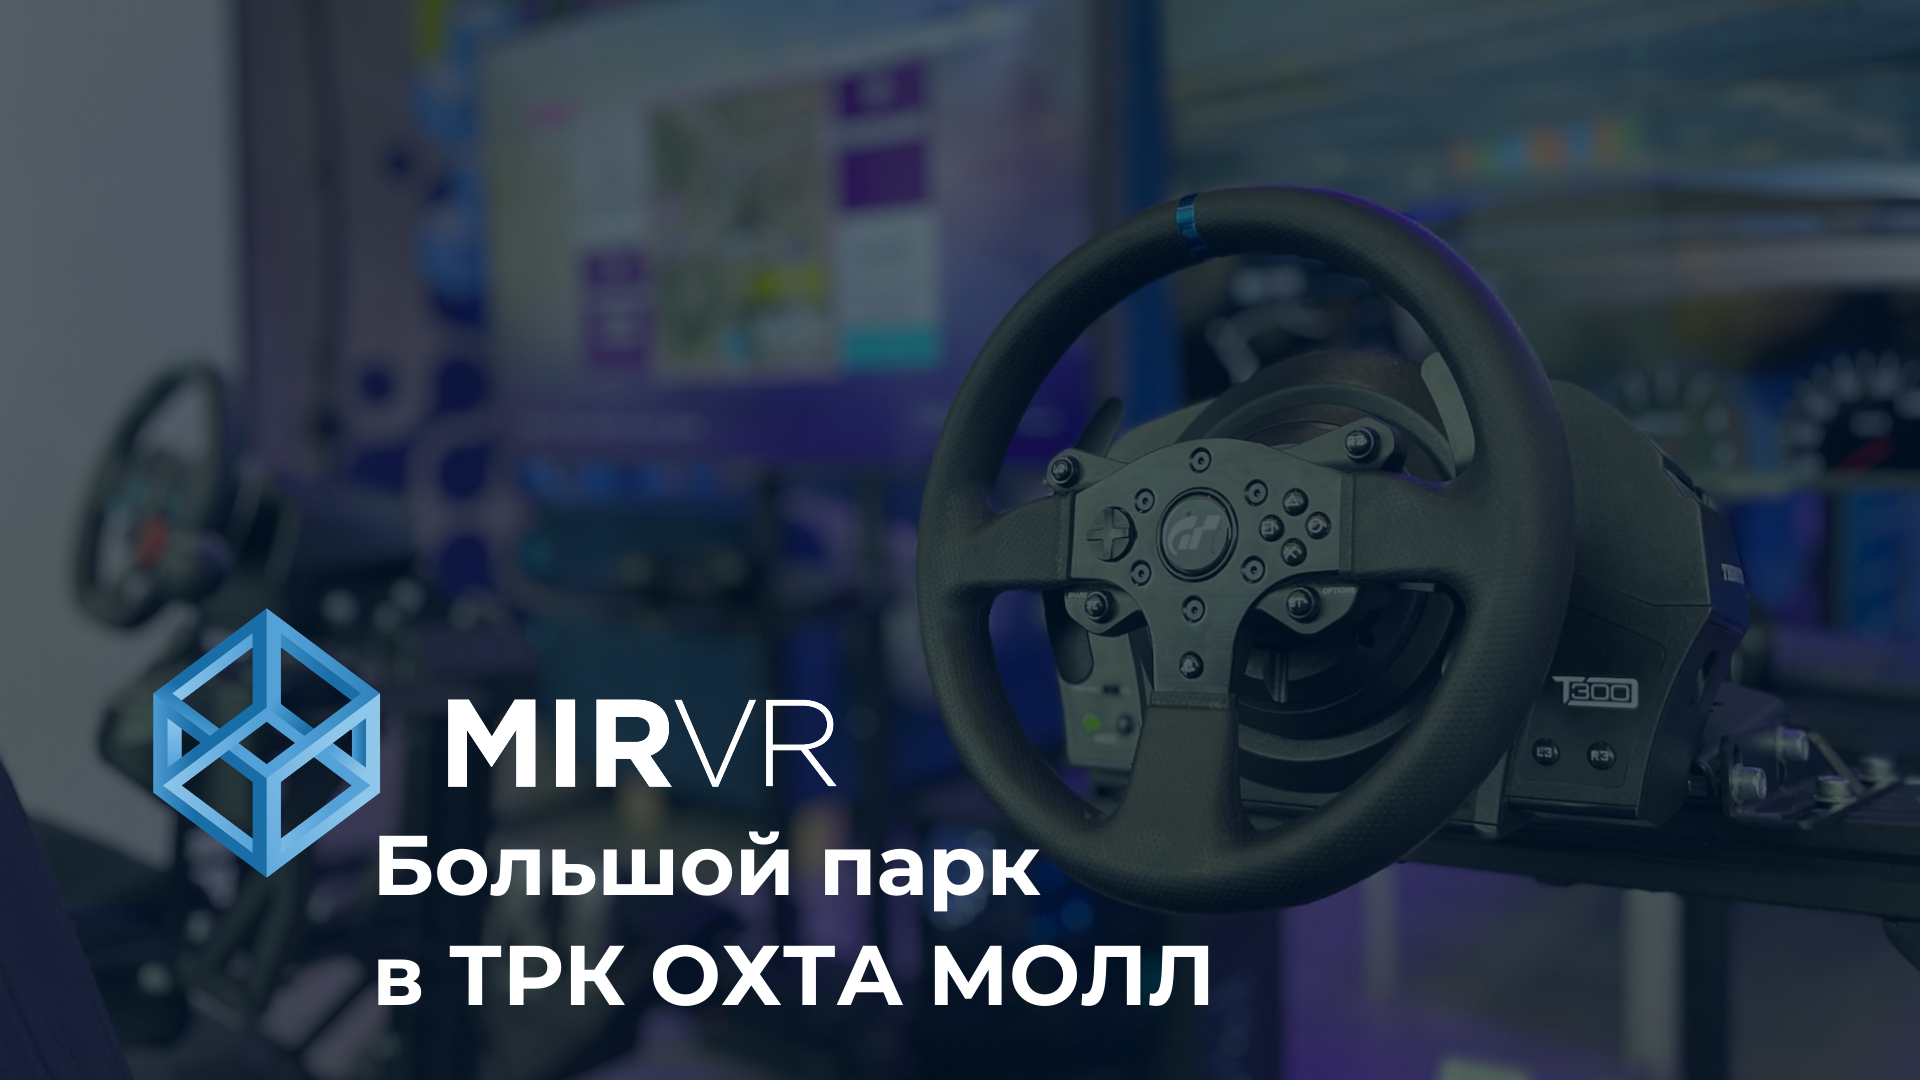 MIR VR в ТРК "Охта Молл"